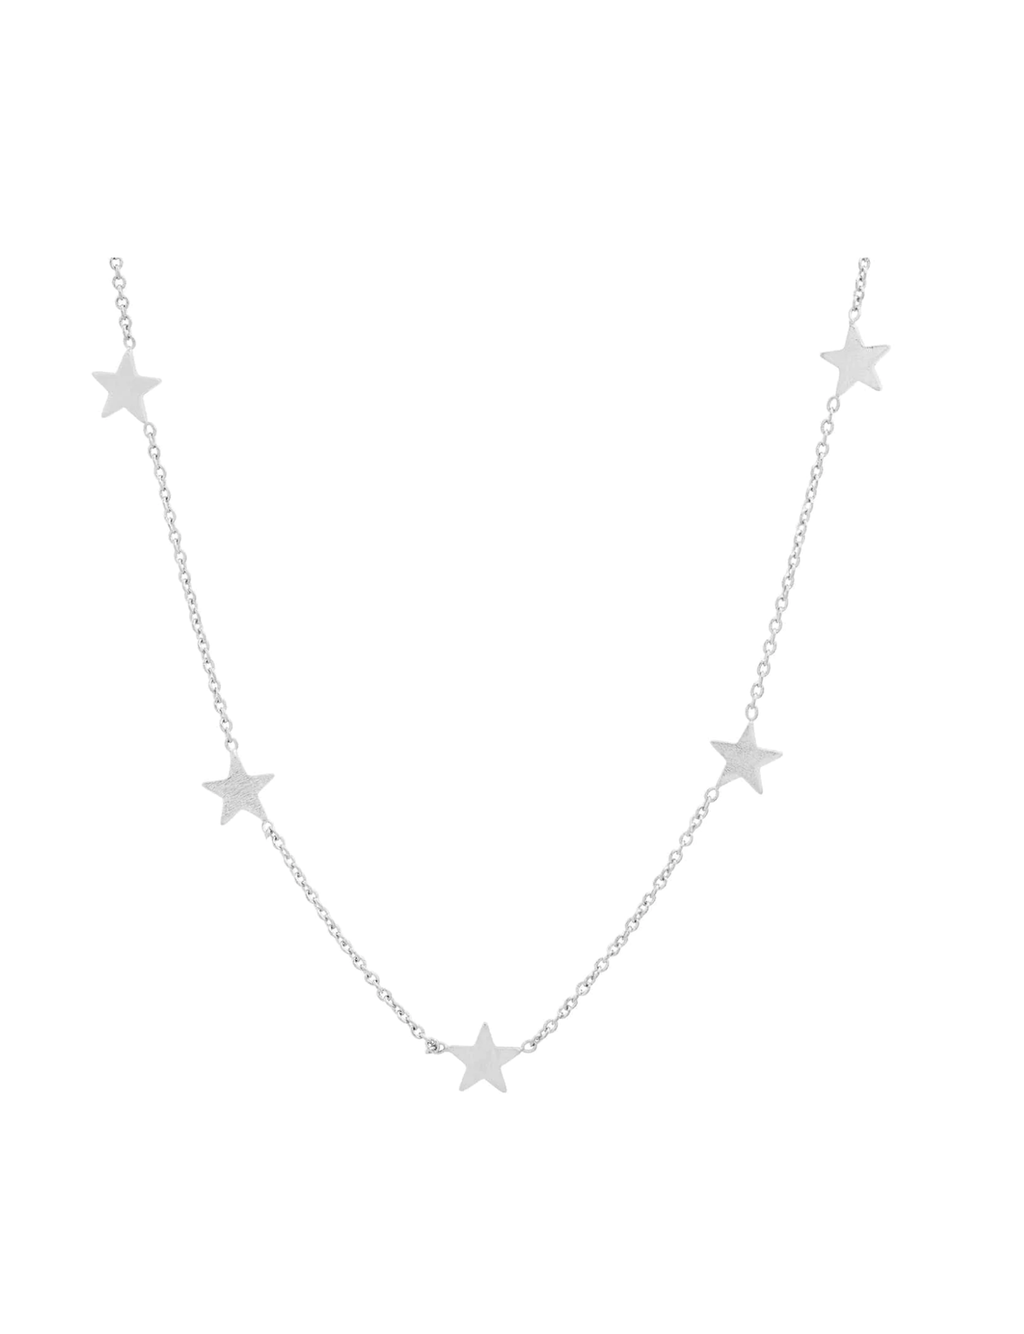 Simple Chain Necklace w/ 5 Mini Stars, Silver